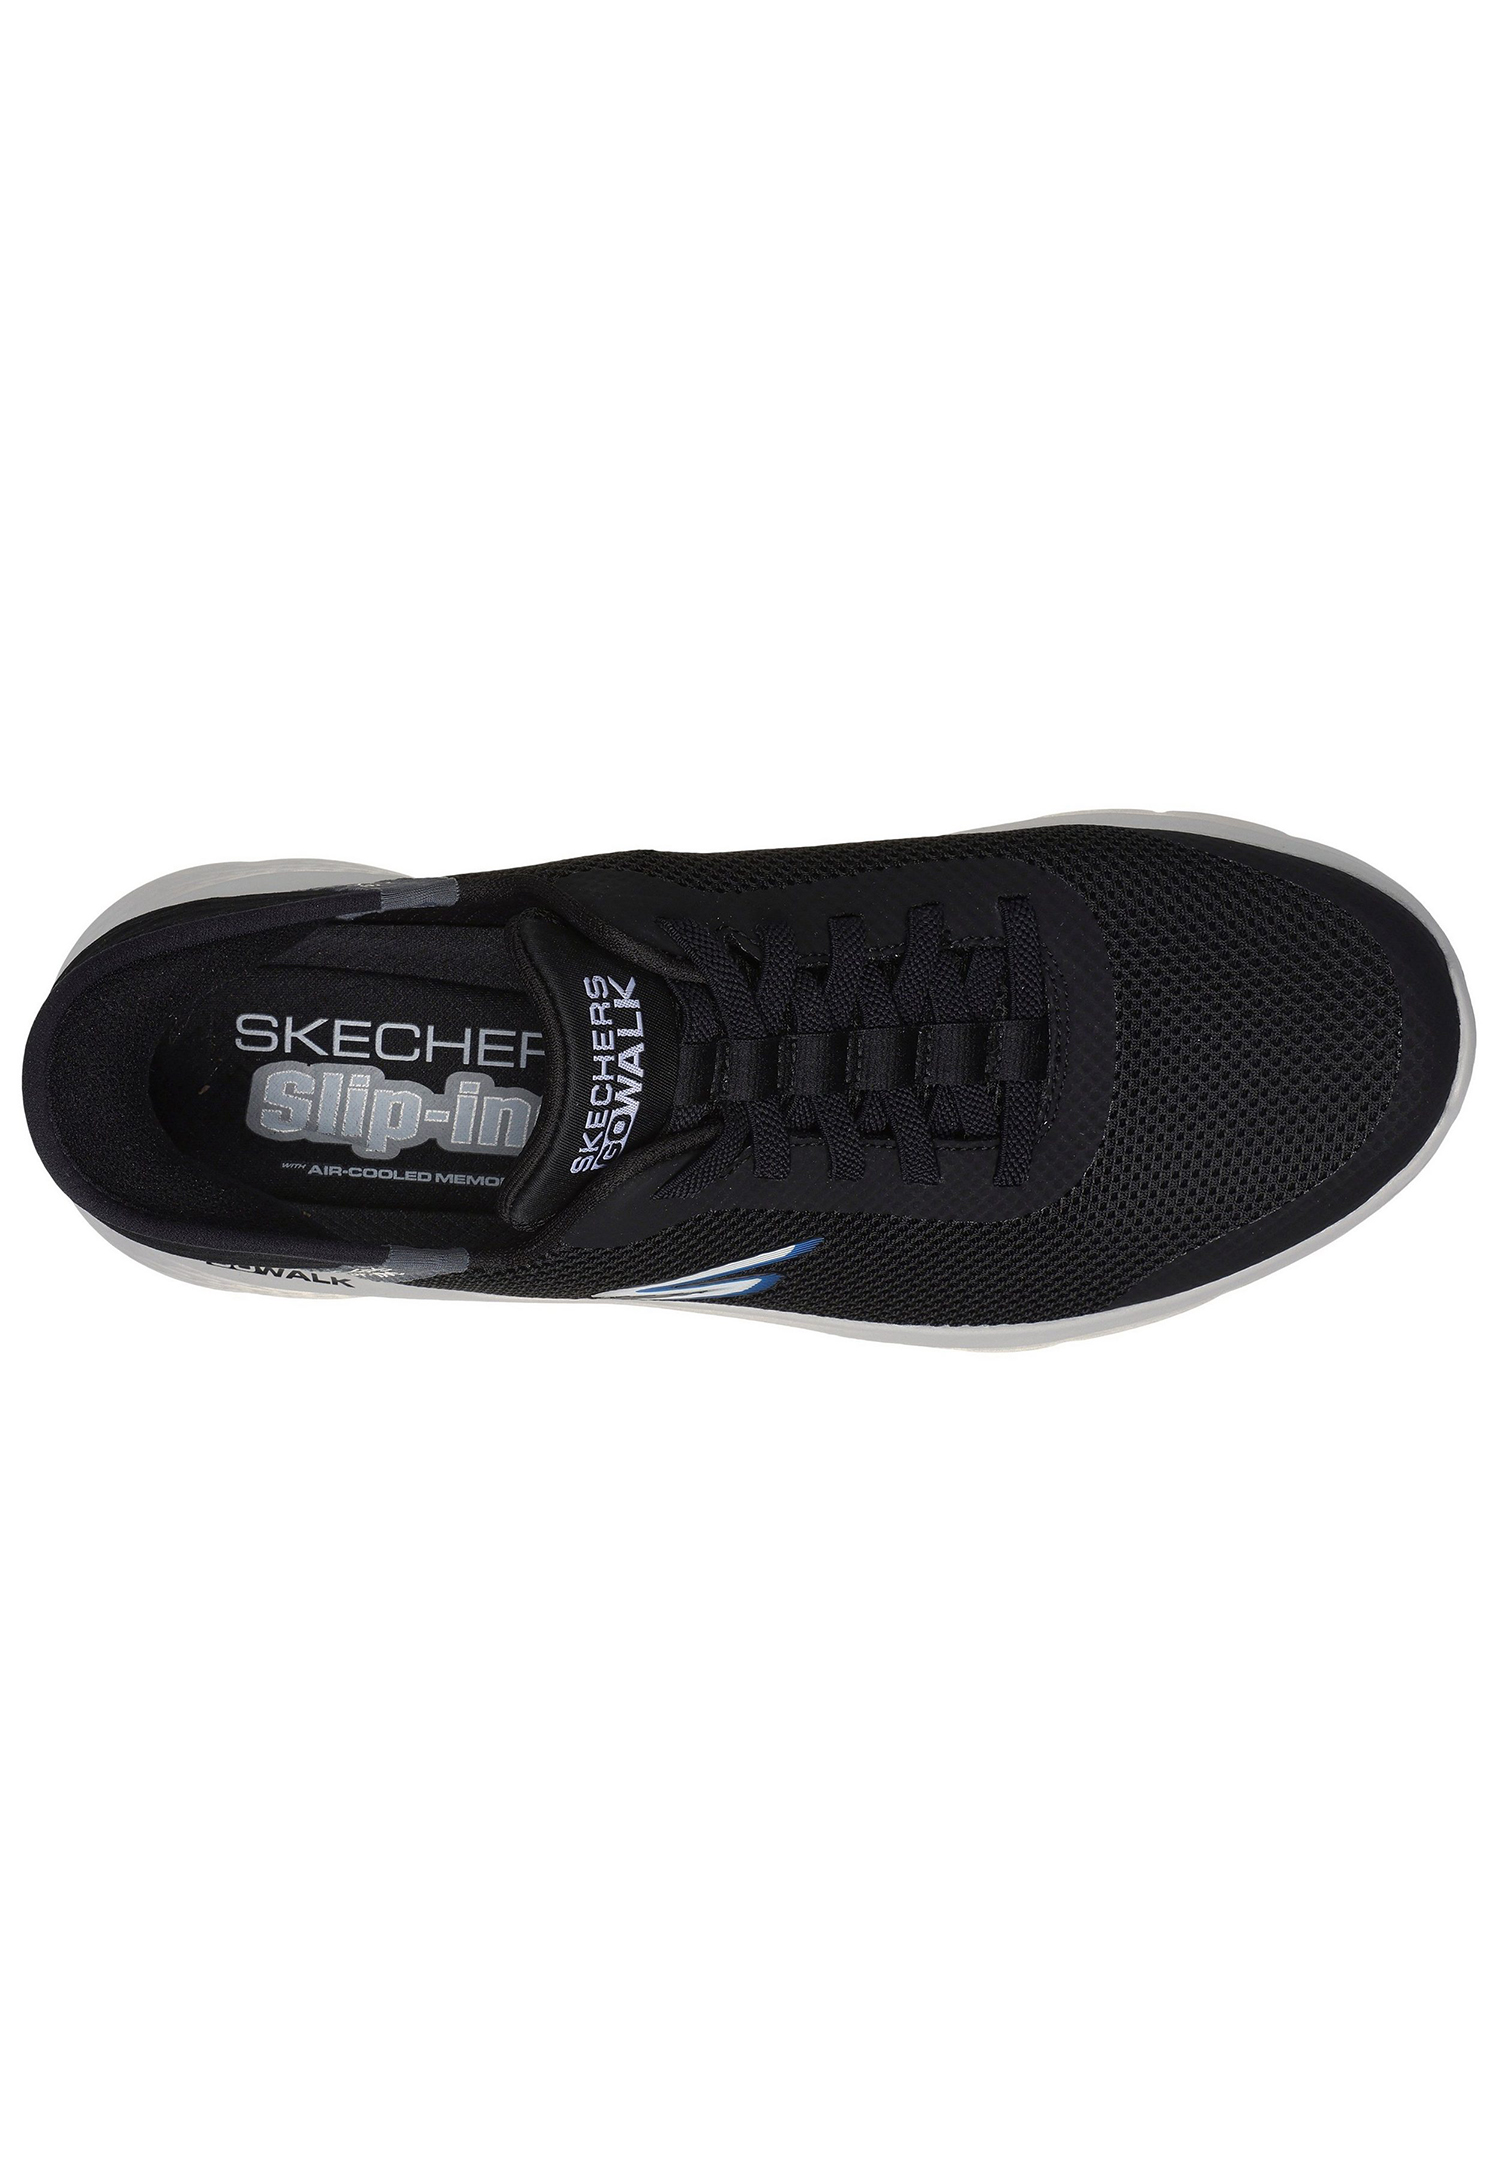 Skechers Go Walk Flex HANDS UP Herren Sneakers Slip in 216496 schwarz